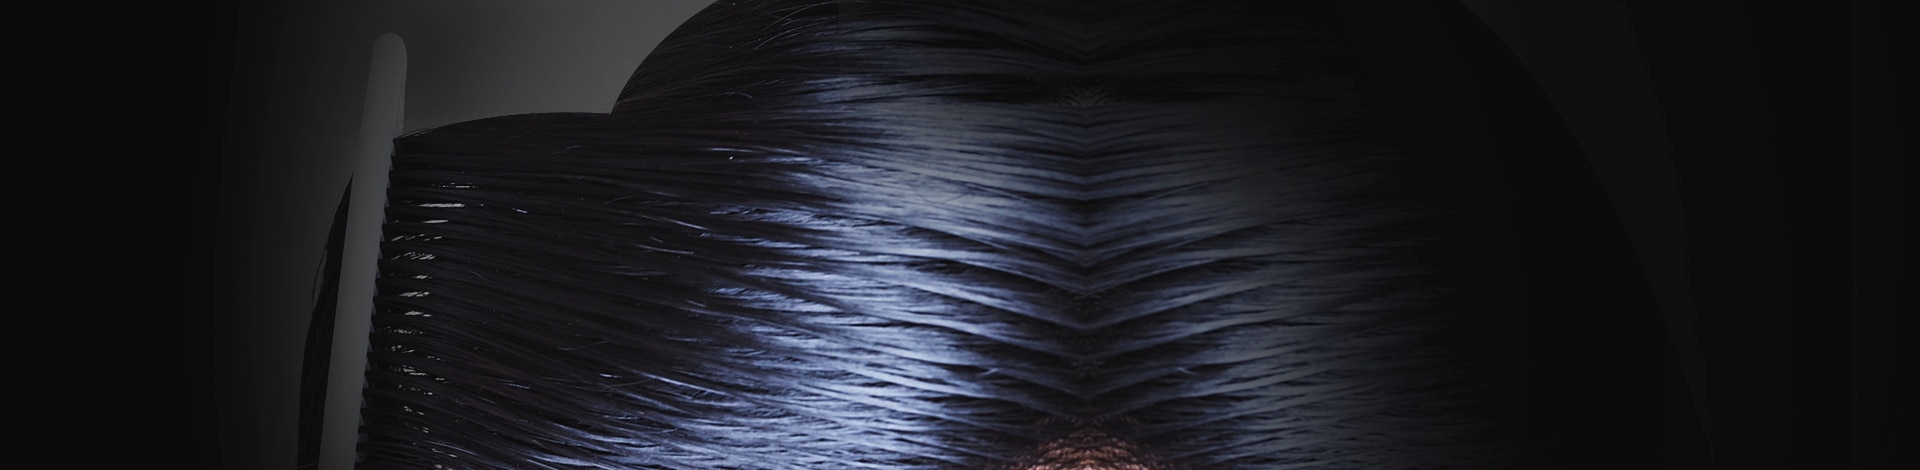 Closeup of sleek black hair being combed